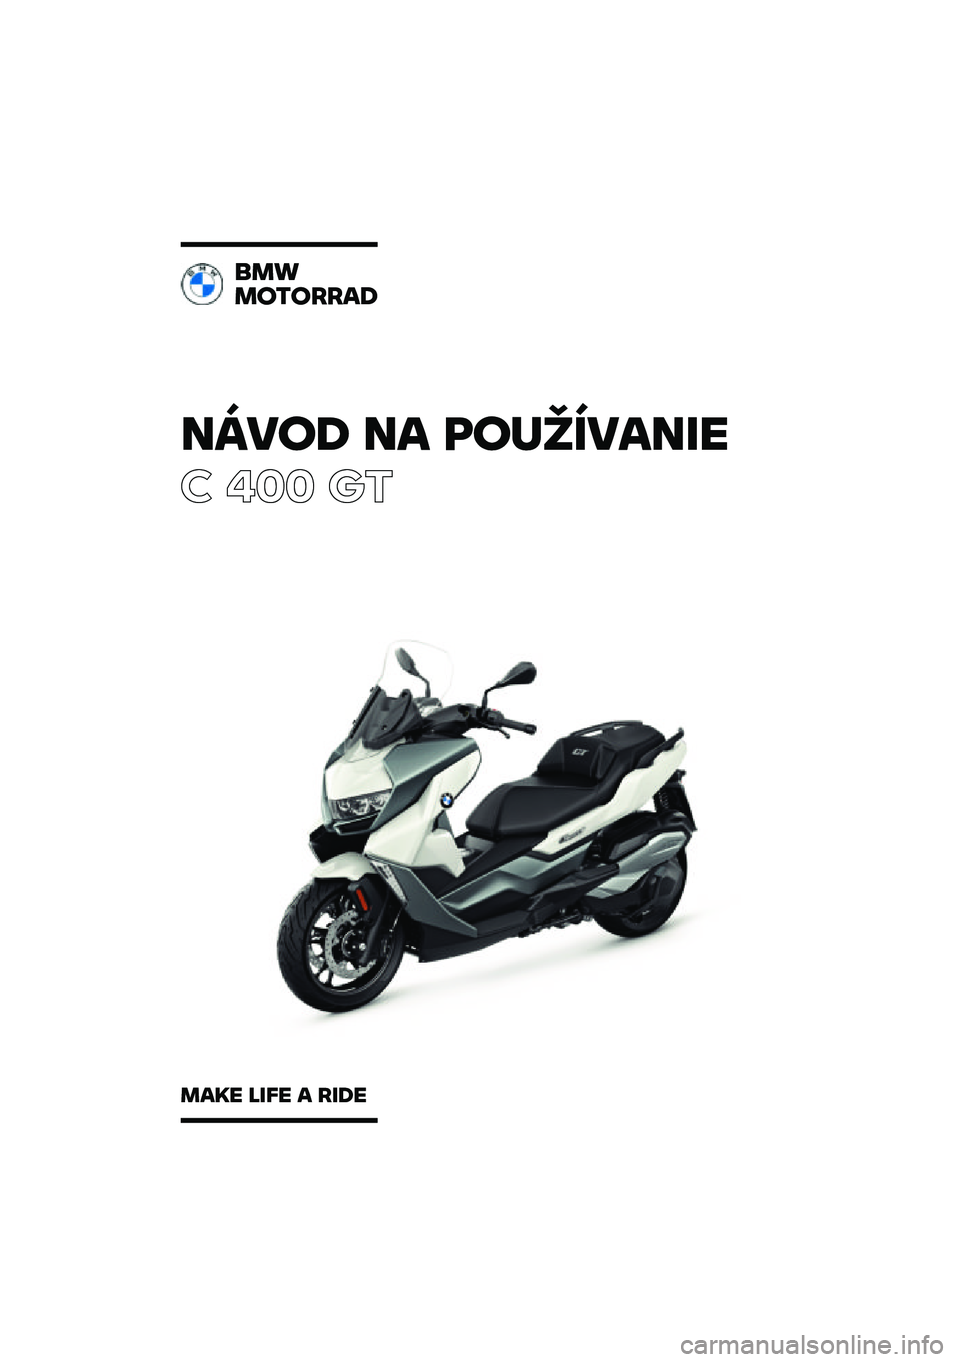 BMW MOTORRAD C 400 GT 2021  Návod na používanie (in Slovak) �����\b �� �	��
�������
� ��� ��\b
���
��������\b
���� ���� � ���\b� 